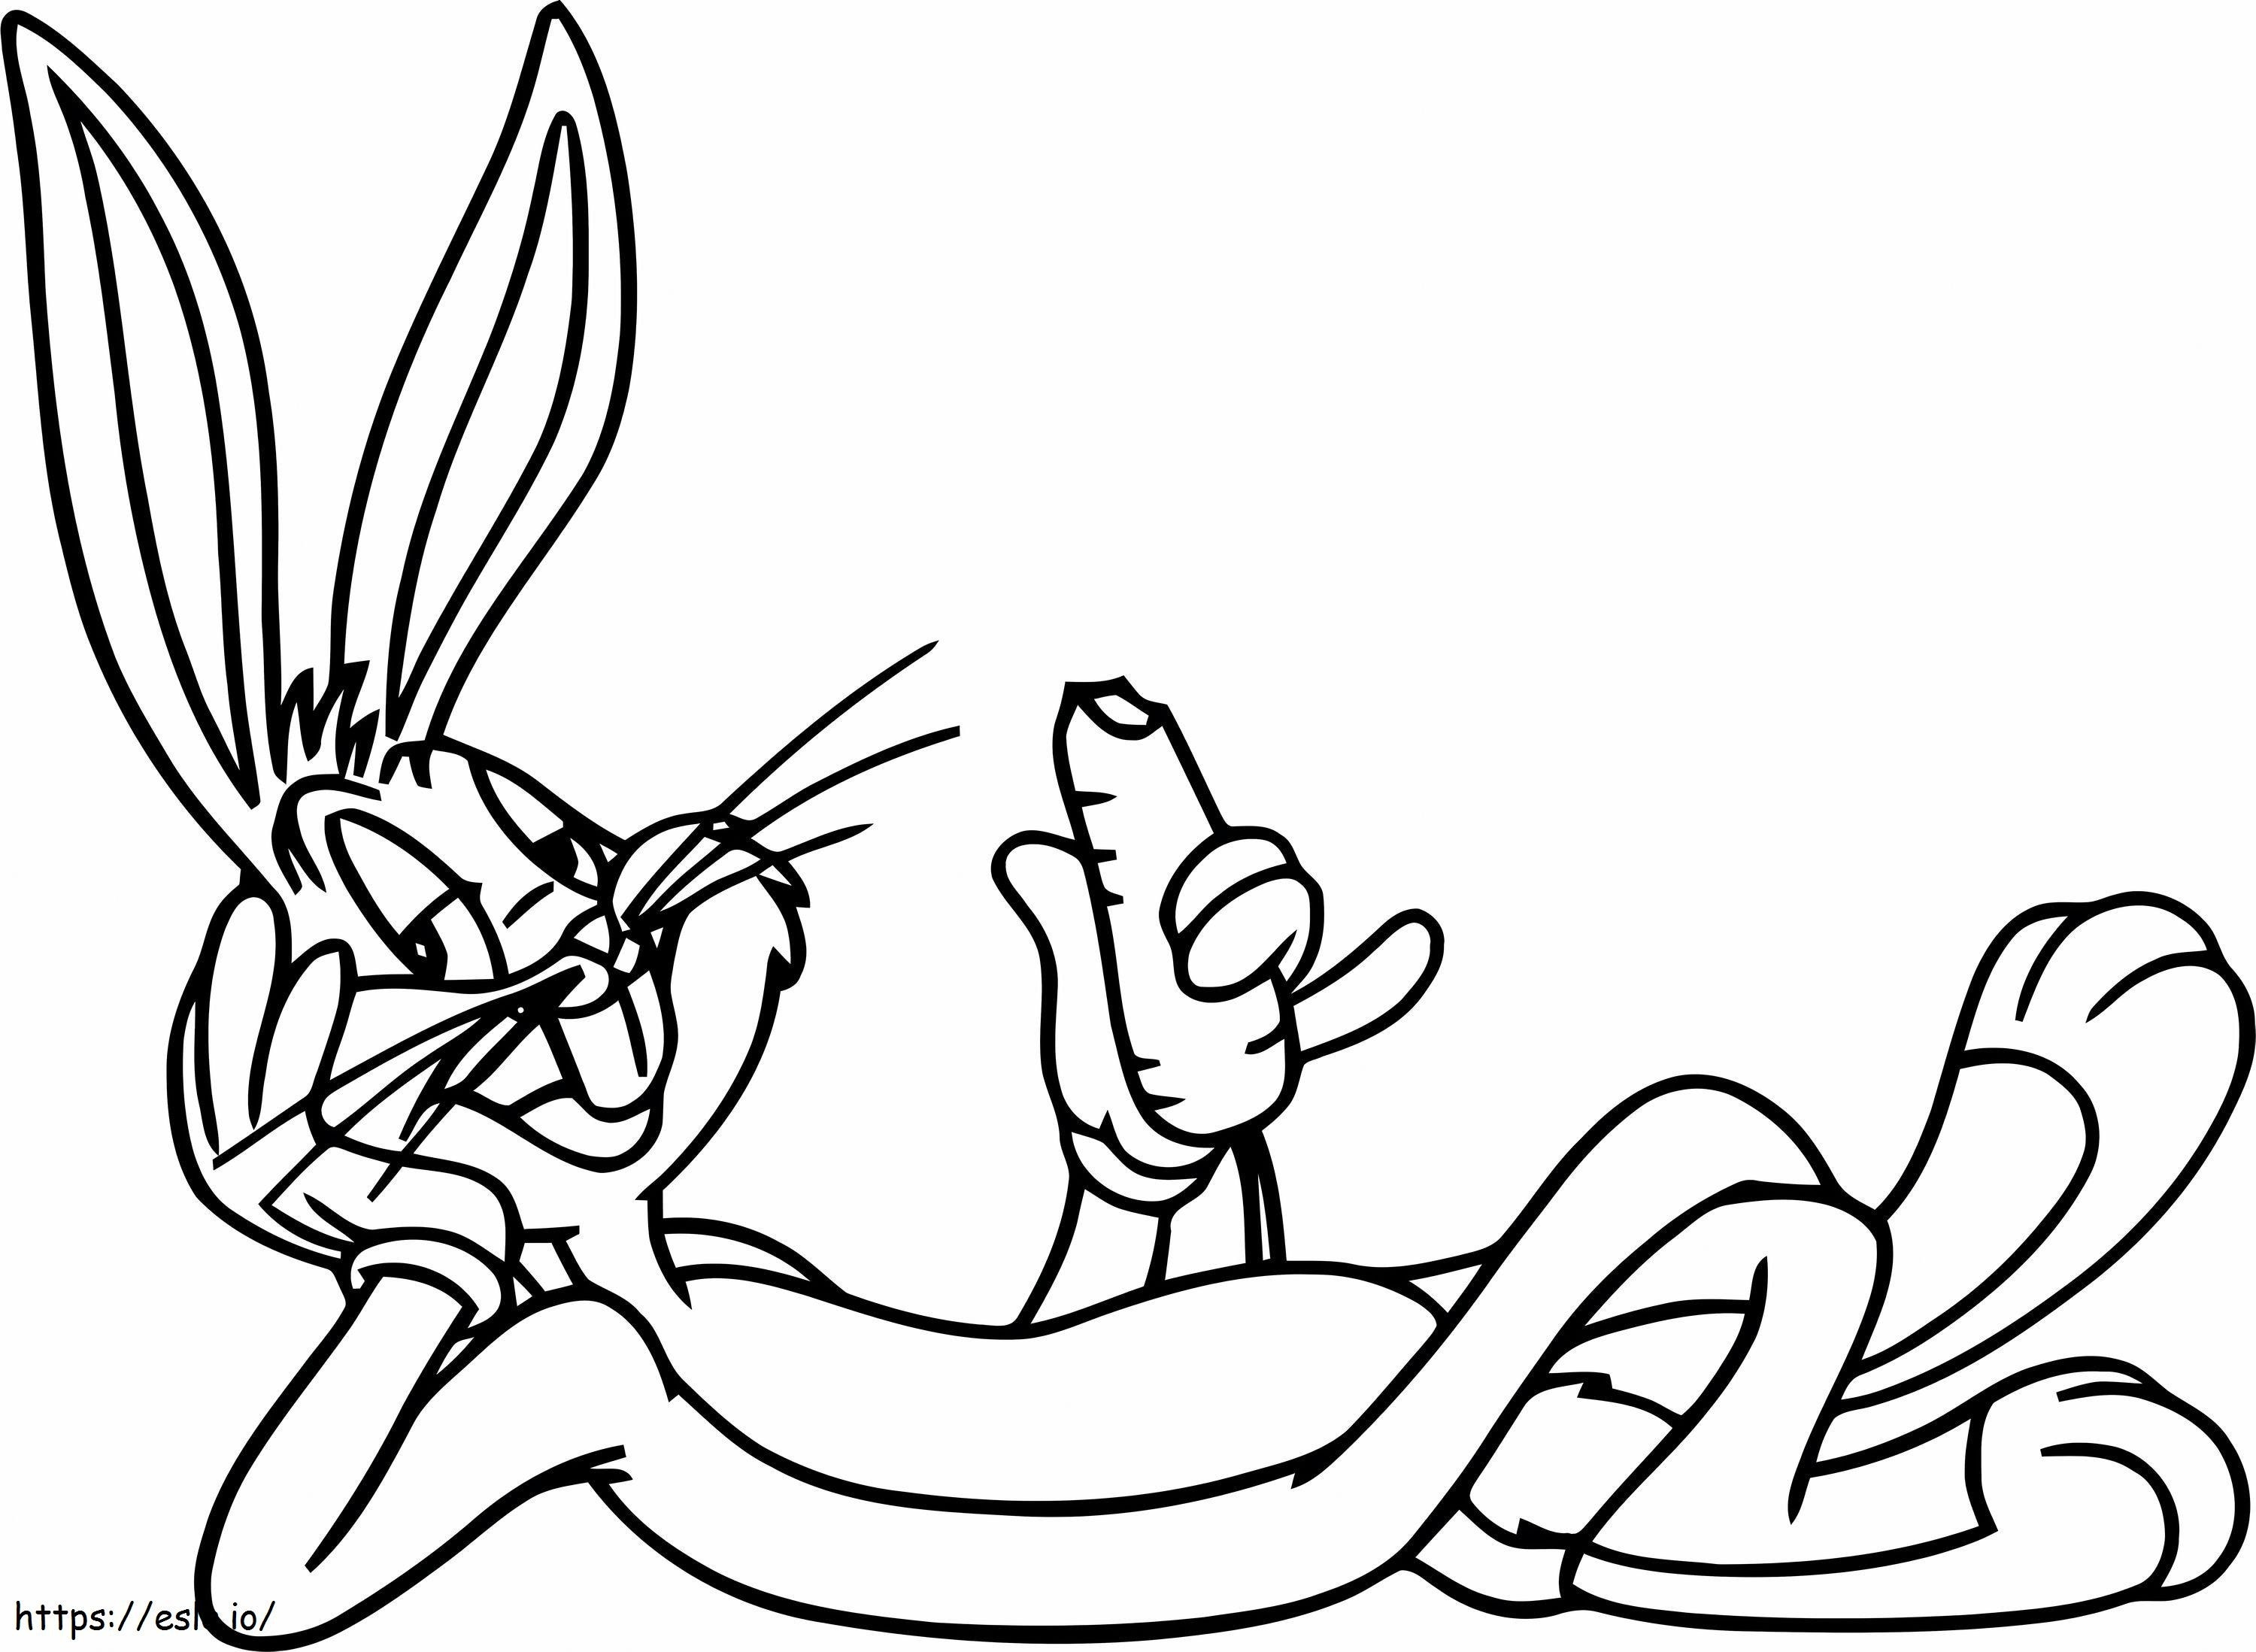 Bugs Bunny Ölçekli Havuç Yeme boyama